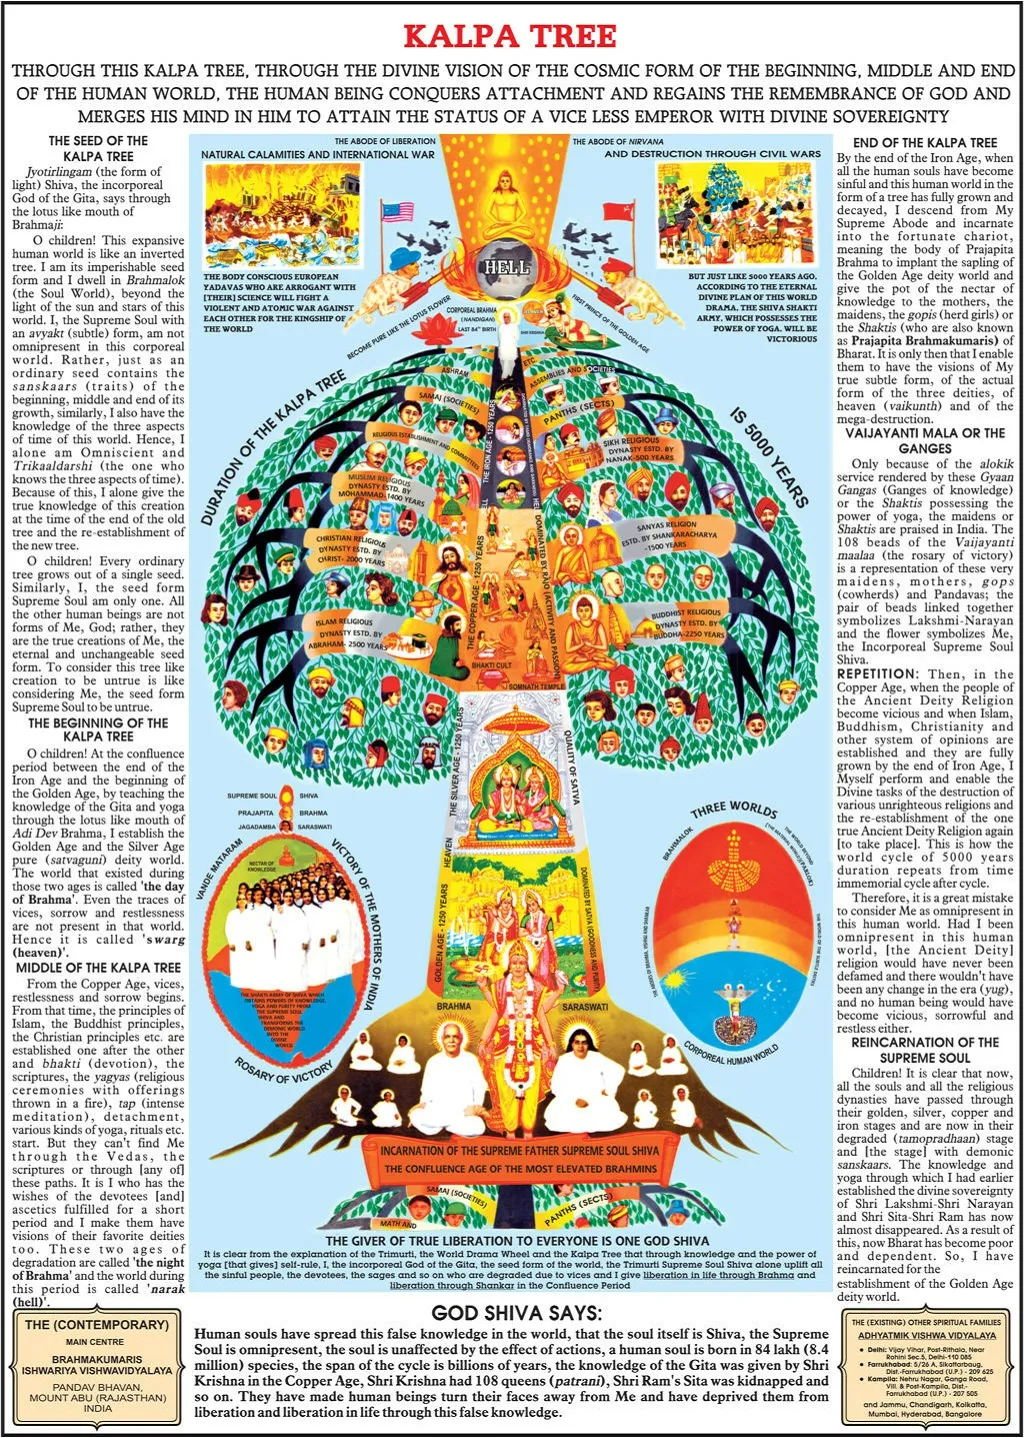 The Kalpa Tree